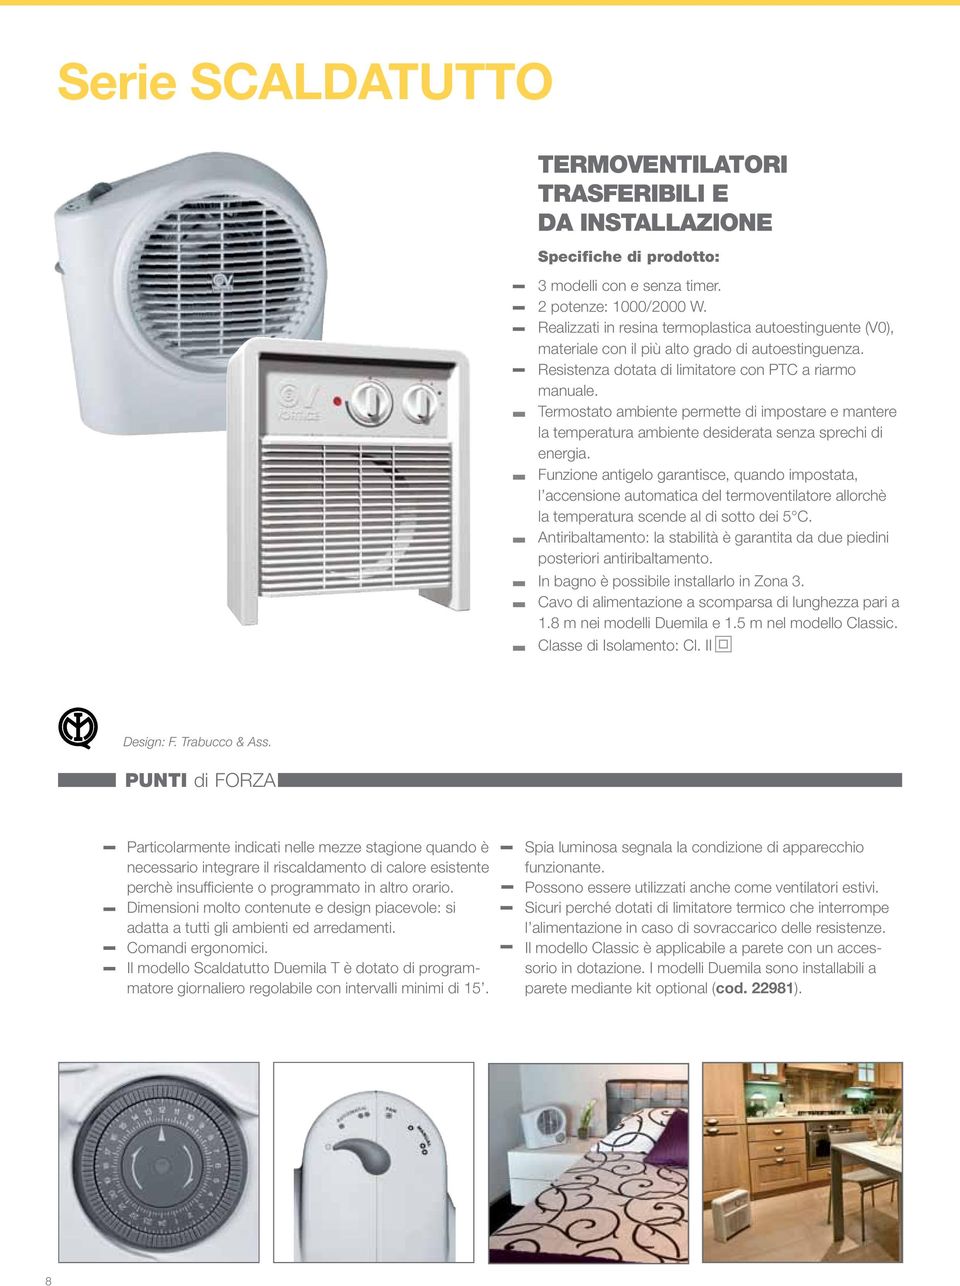 Termostato ambiente permette di impostare e mantere la temperatura ambiente desiderata senza sprechi di energia.